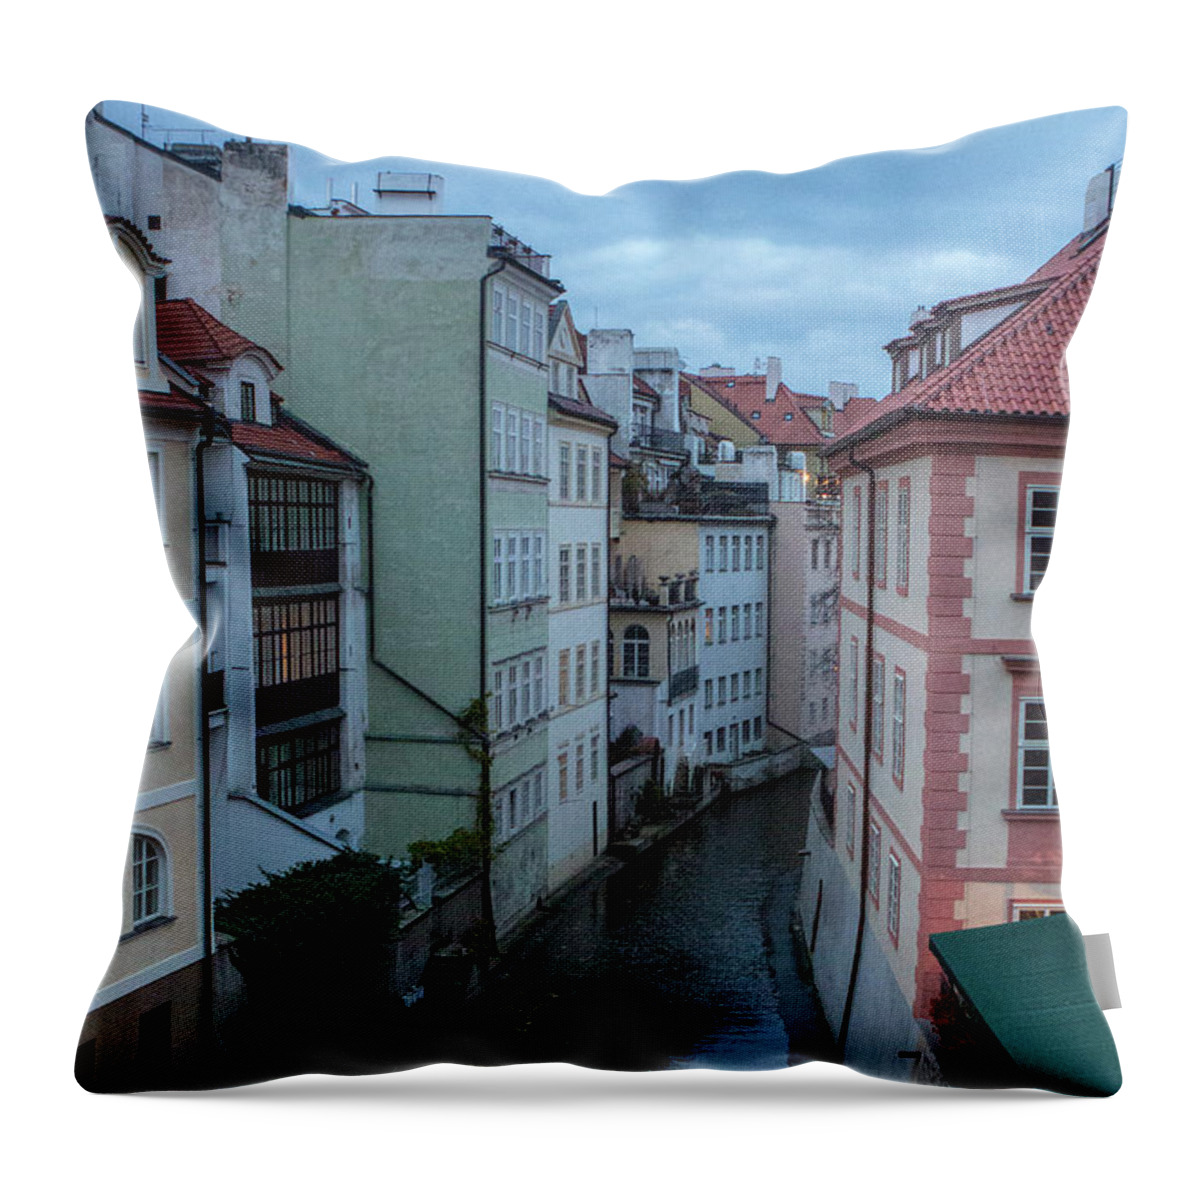 Prague Throw Pillow featuring the photograph Along the Prague Canals by Matthew Wolf